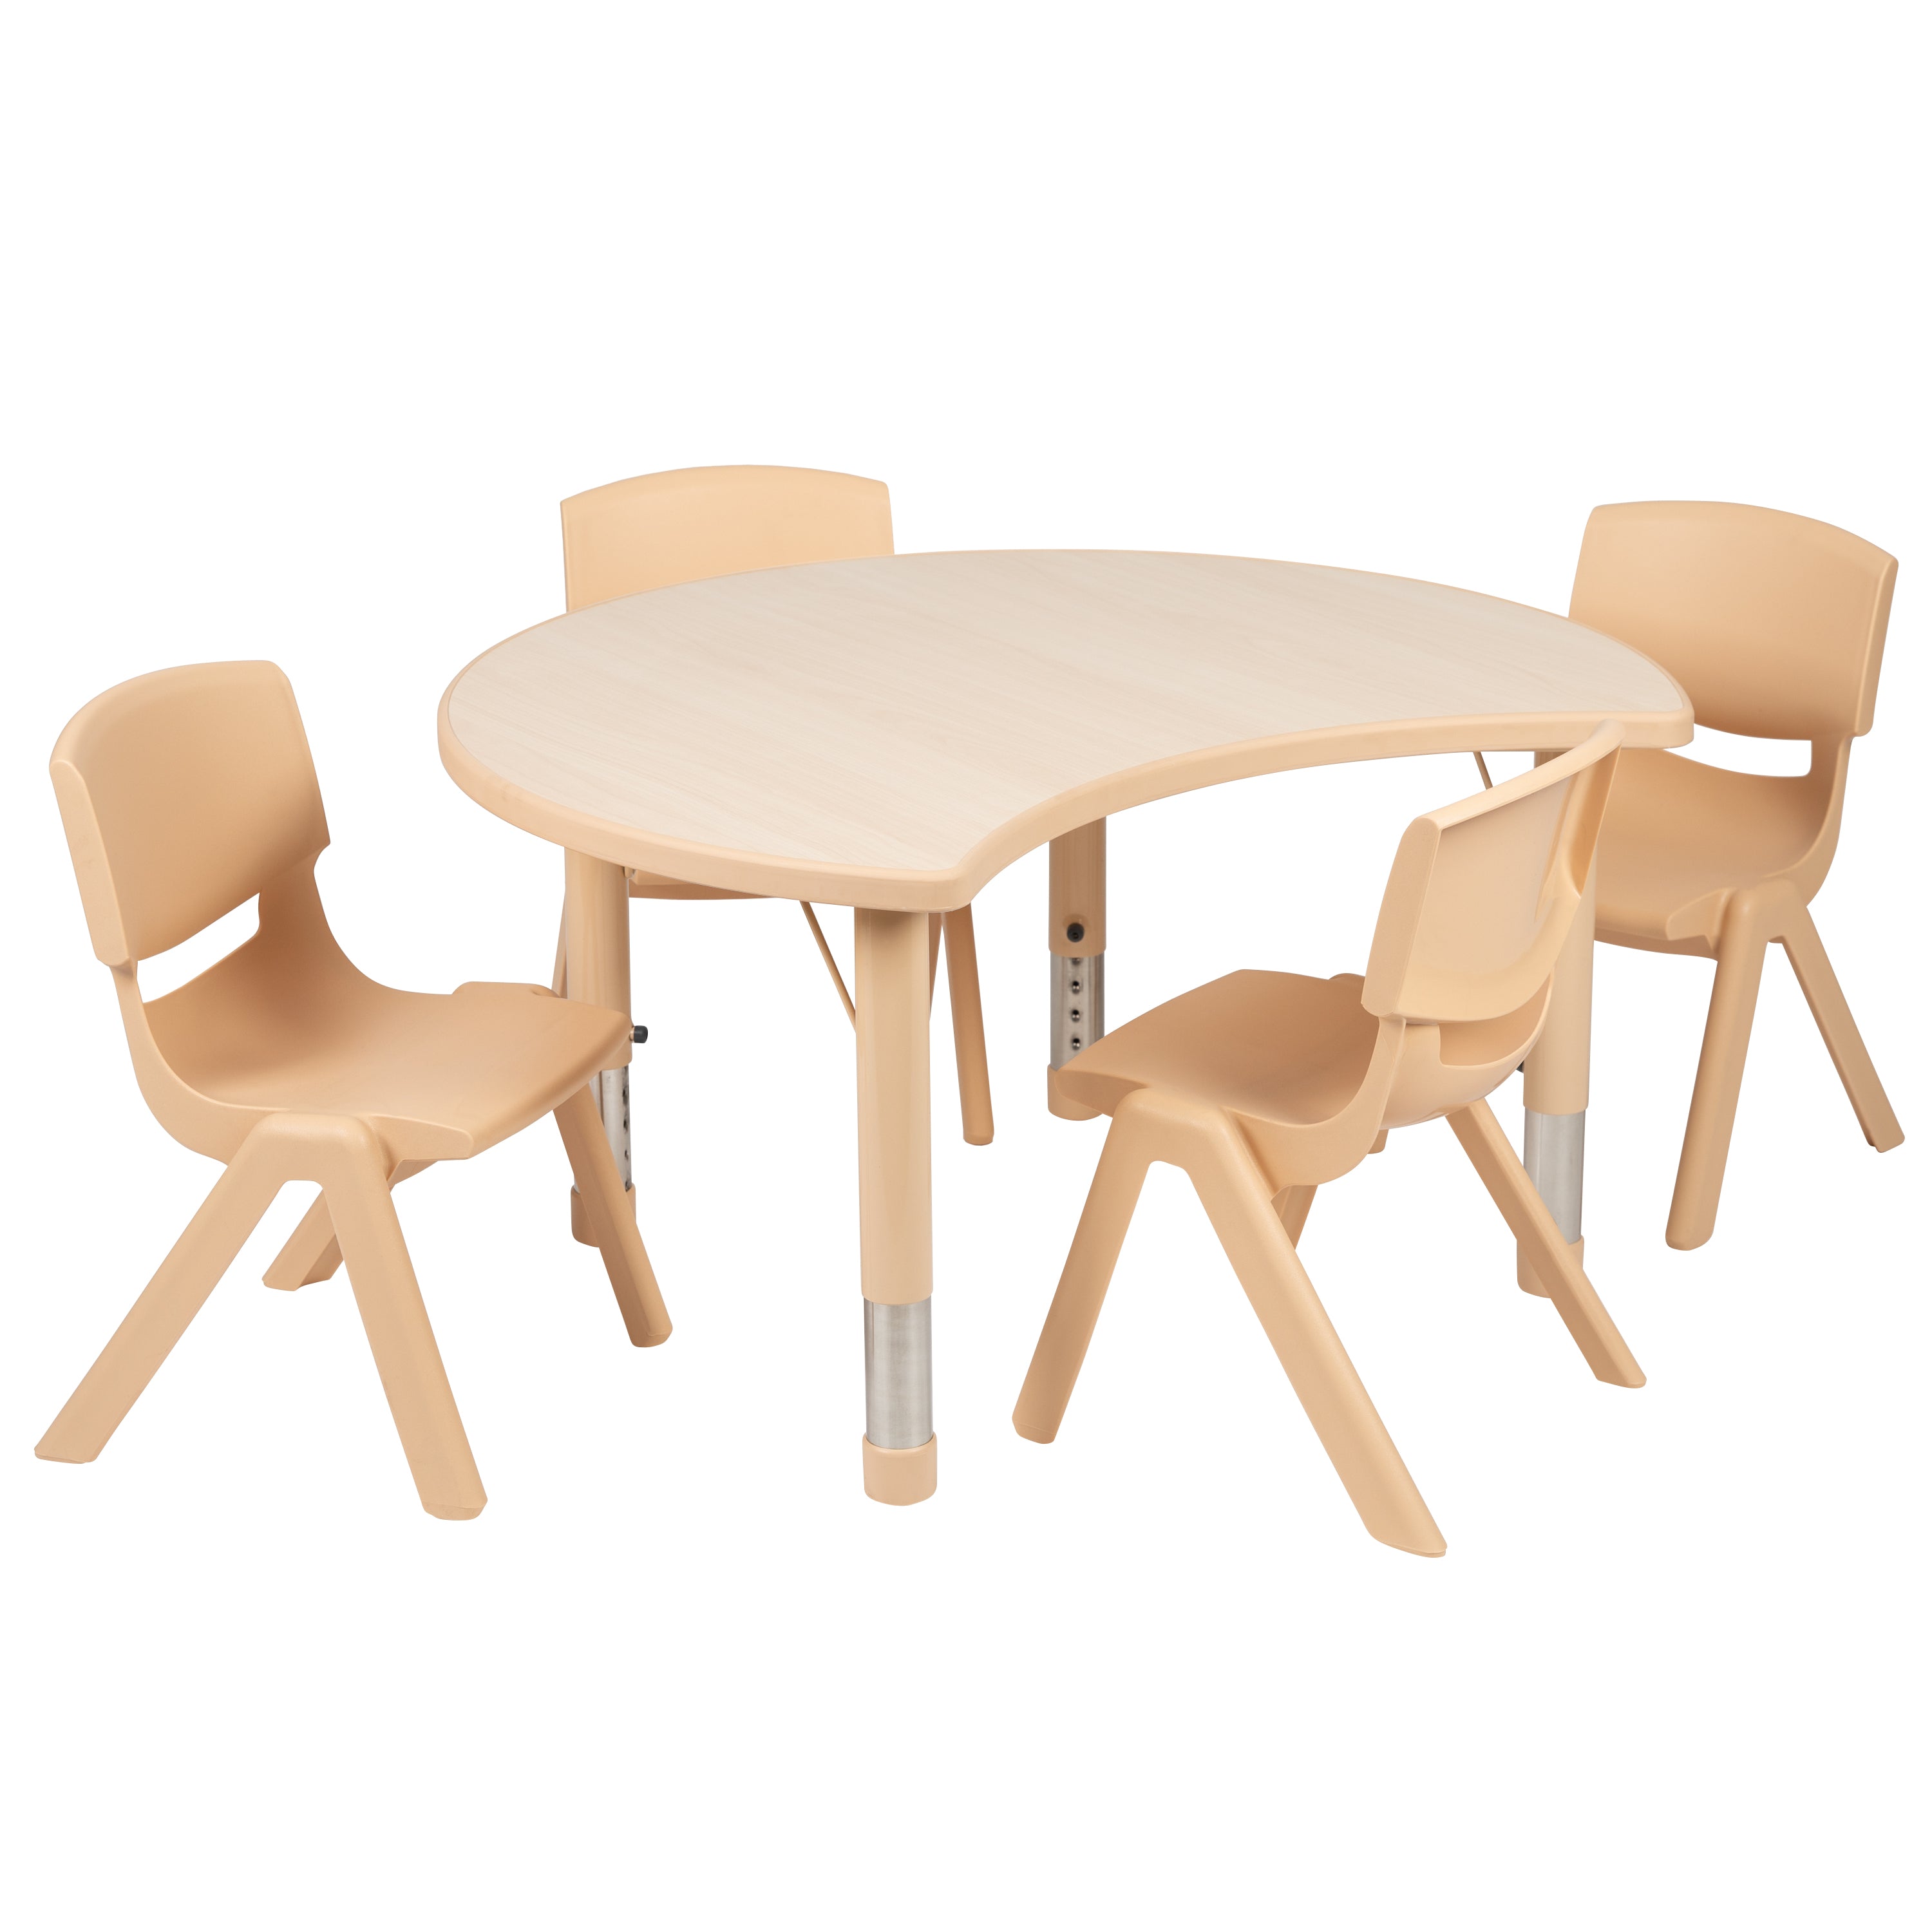 25.125"W x 35.5"L Crescent Plastic Height Adjustable Activity Table Set with 4 Chairs-Crescent Activity Table Set-Flash Furniture-Wall2Wall Furnishings